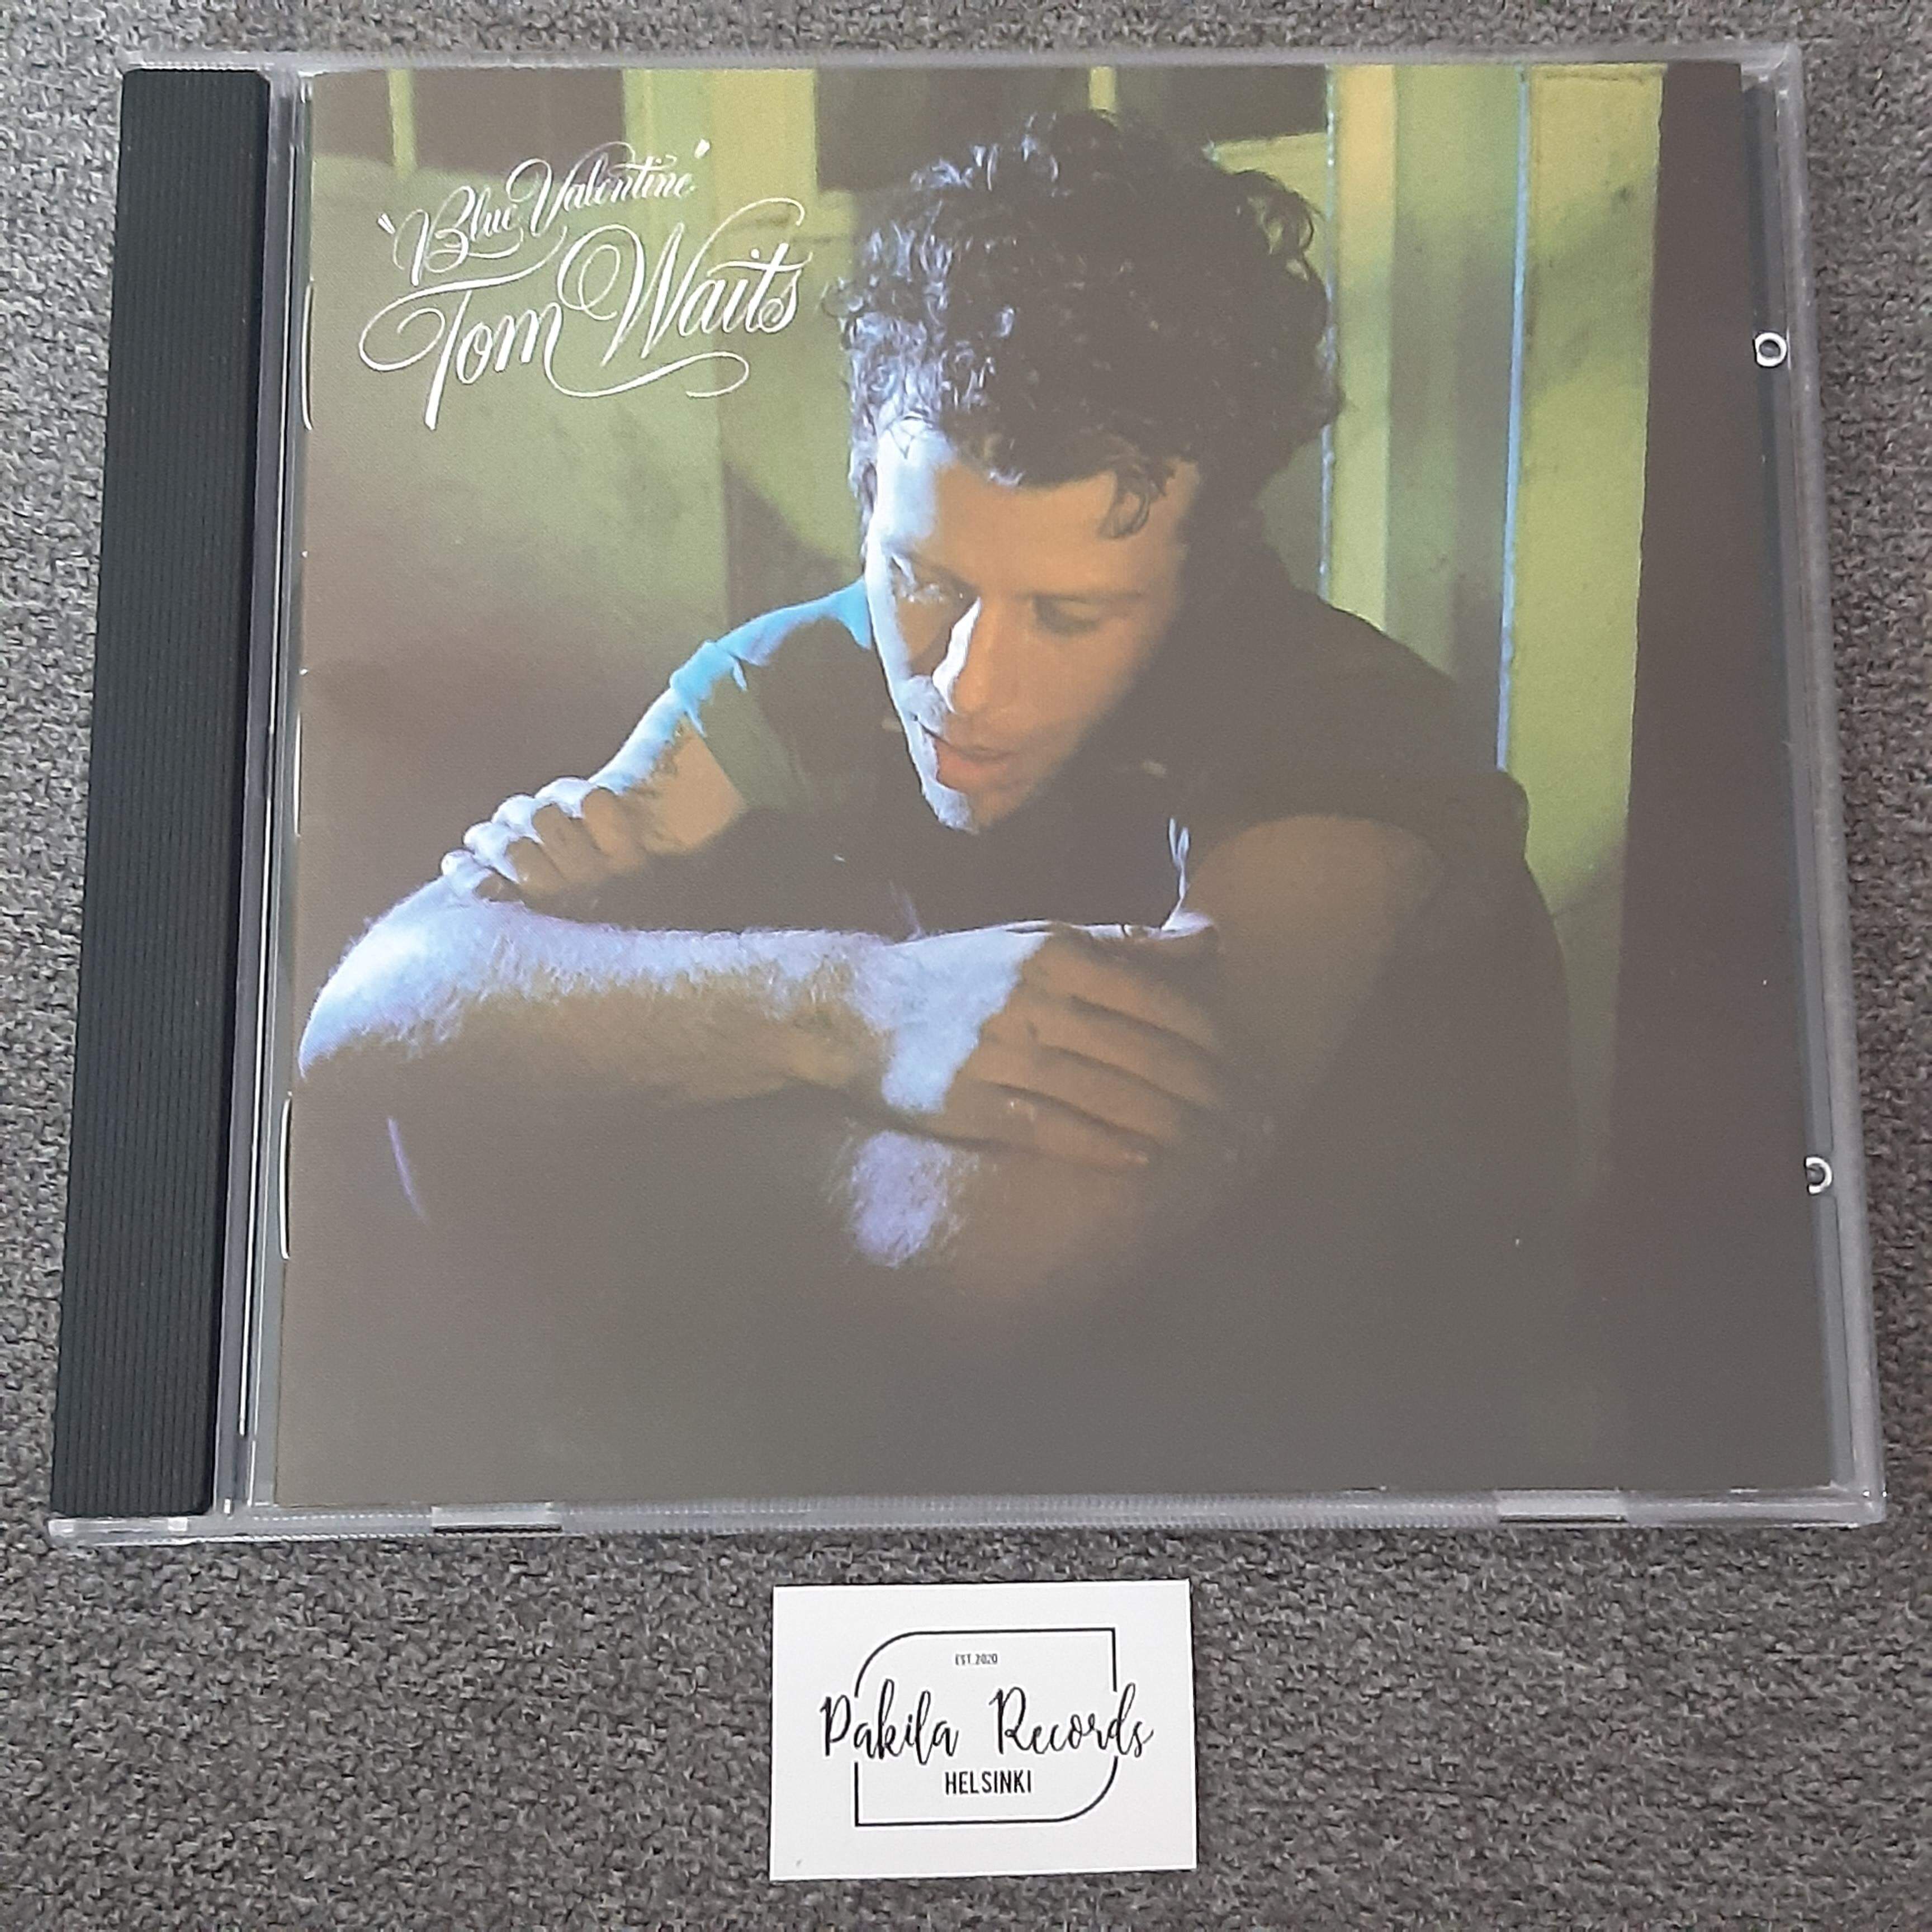 Tom Waits - Blue Valentine - CD (käytetty)